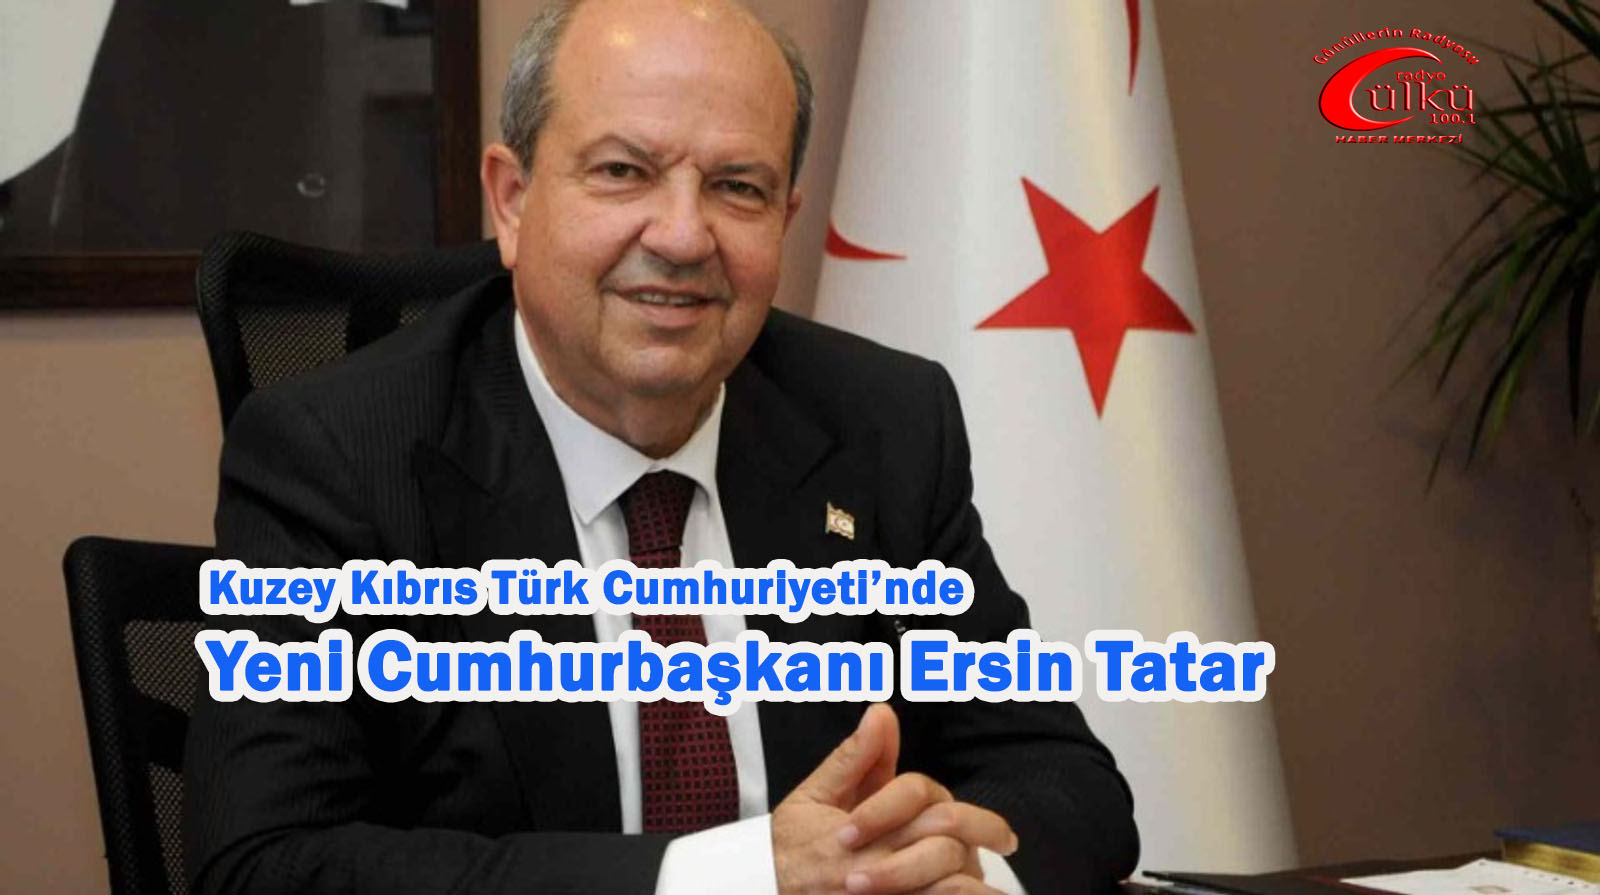 -Kıbrıs Türkü Seçimini Yaptı